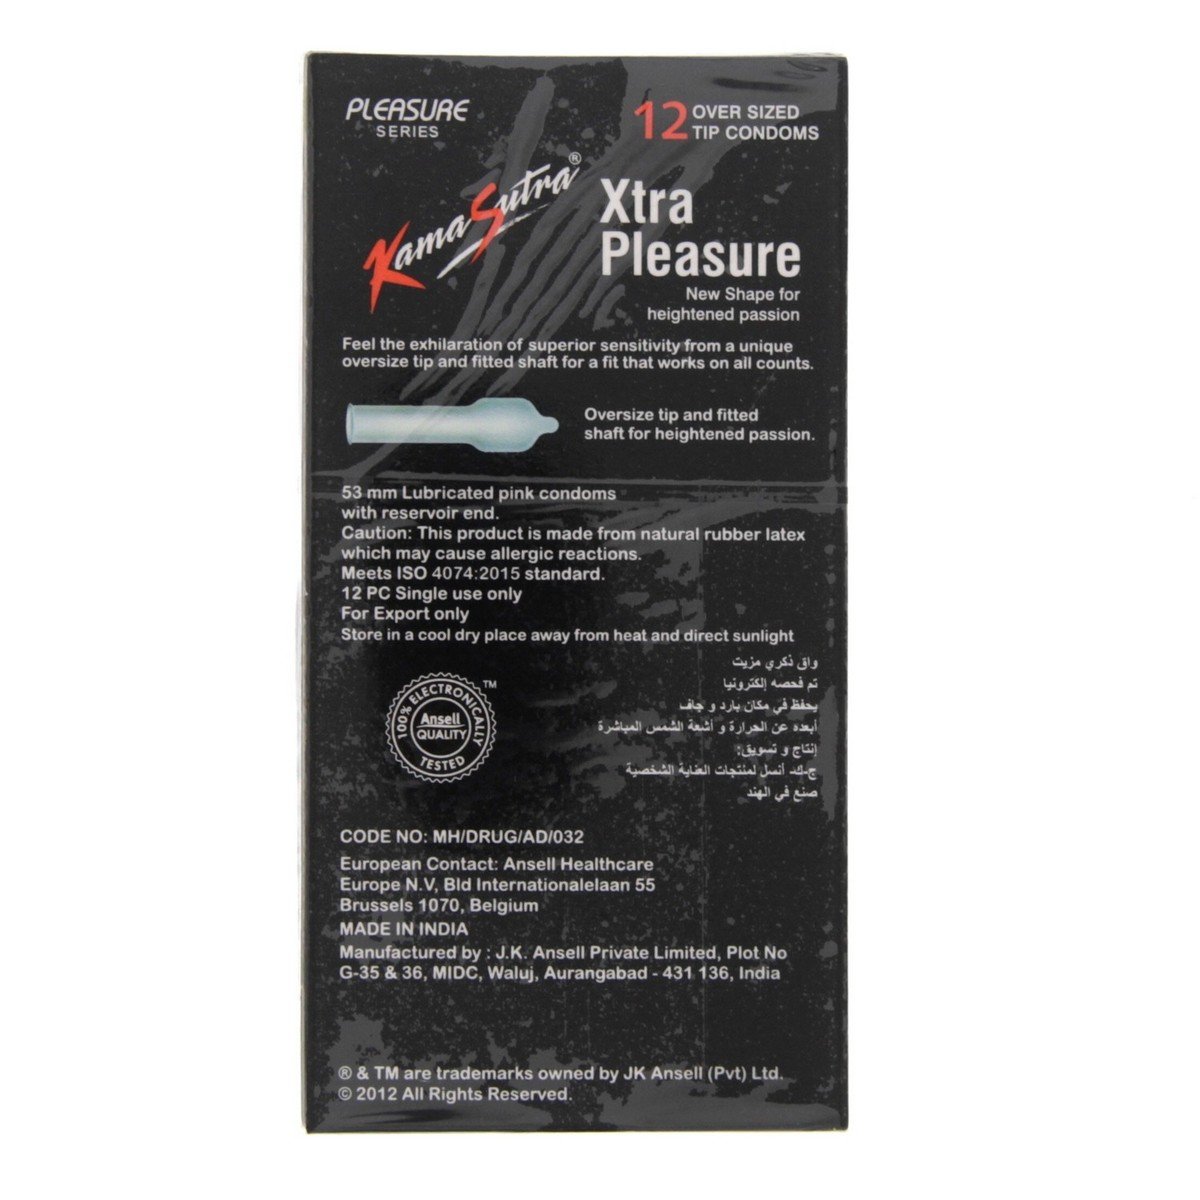 Kamasutra Xtra Pleasure Condoms 12 pcs